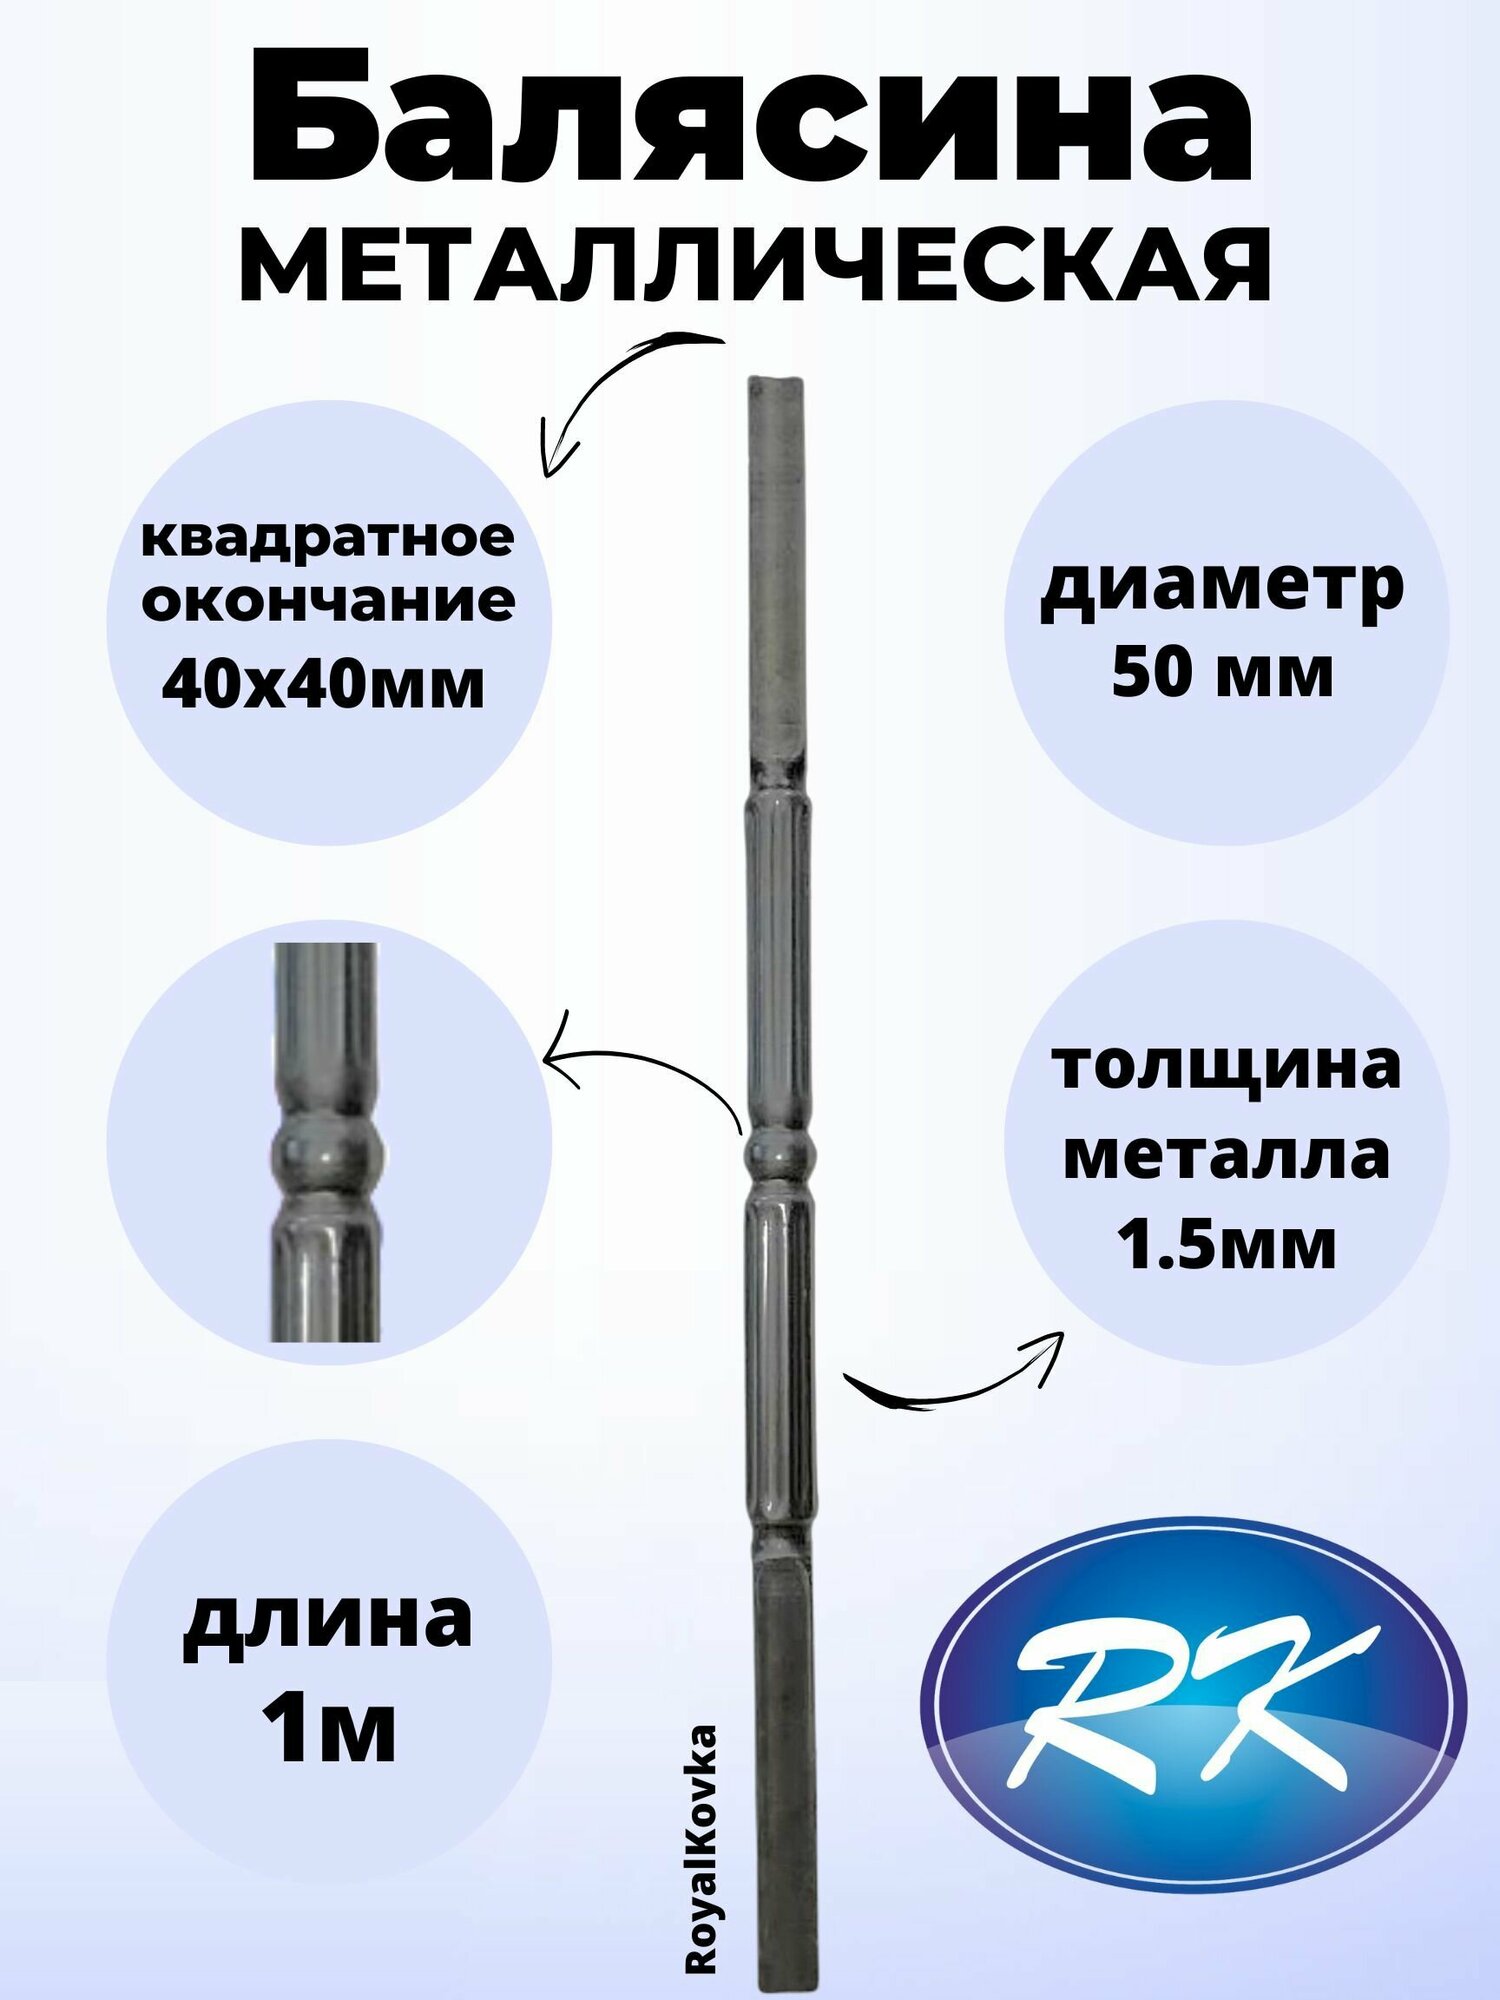 Балясина кованая металлическая Royal Kovka диаметр 50 мм квадратные окончания 40х40 мм арт. 40*40.3 КА. КВ